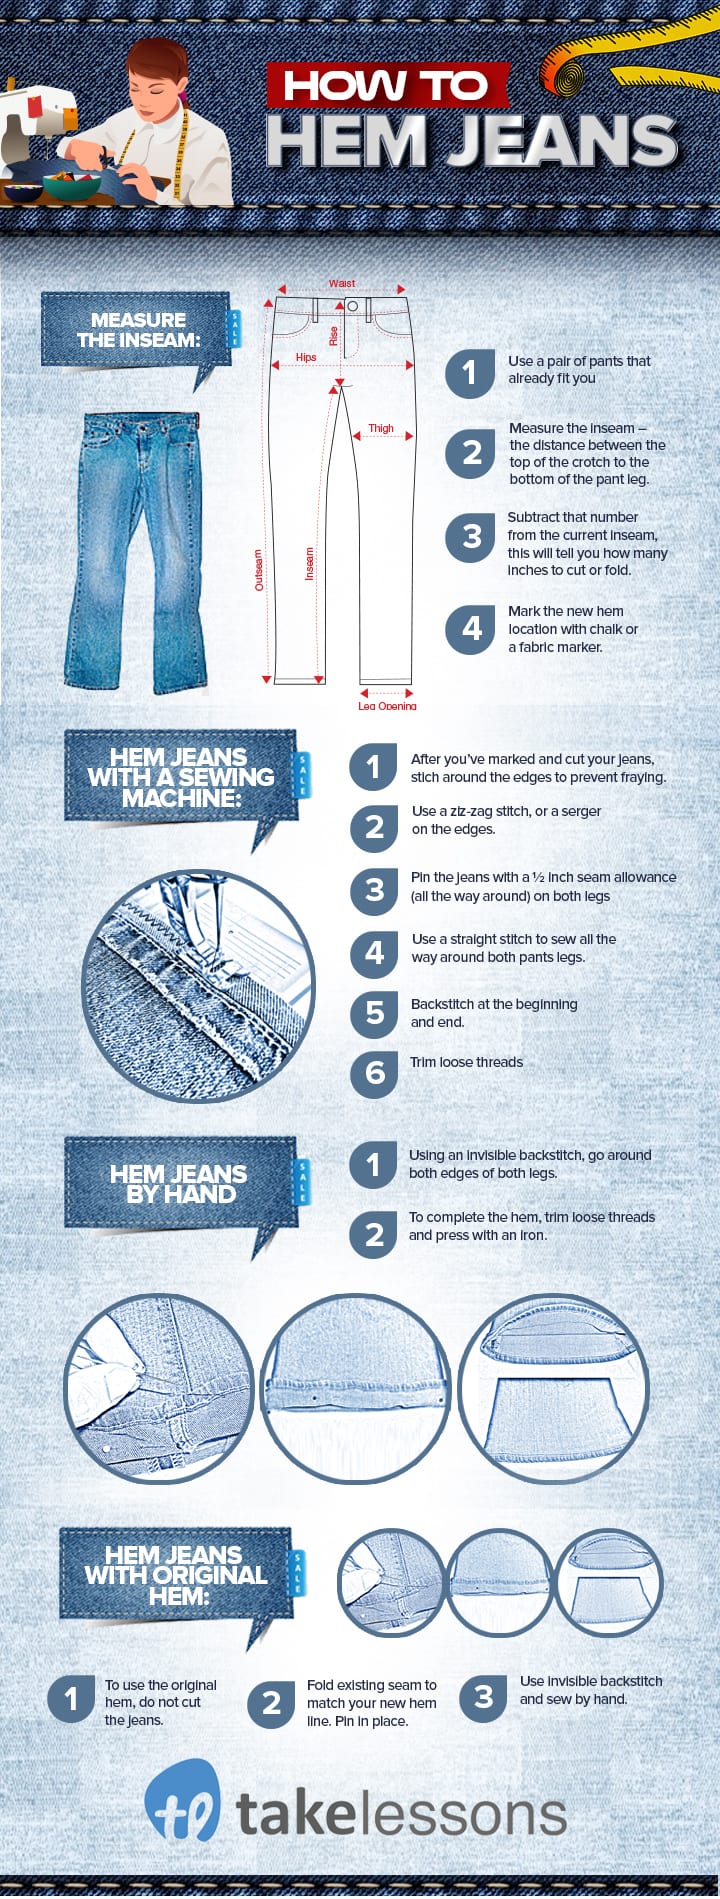 3 Ways to Hem Jeans - wikiHow